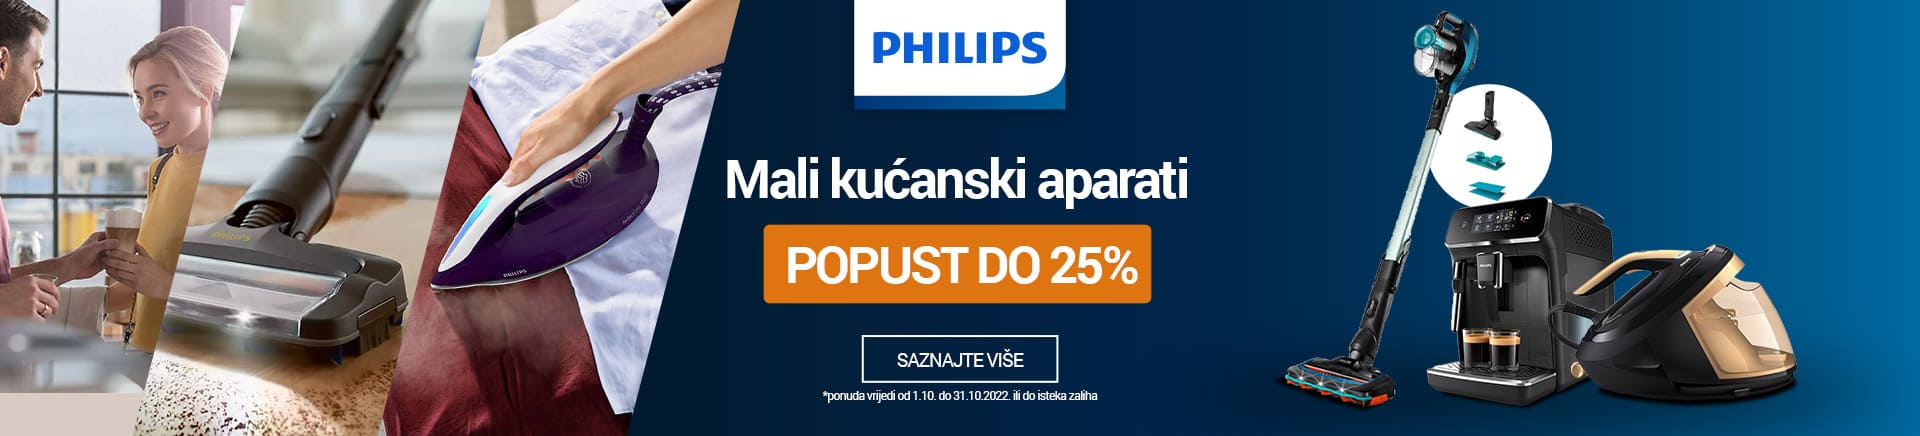 Philips Mali kućanski aparati do 25% popusta